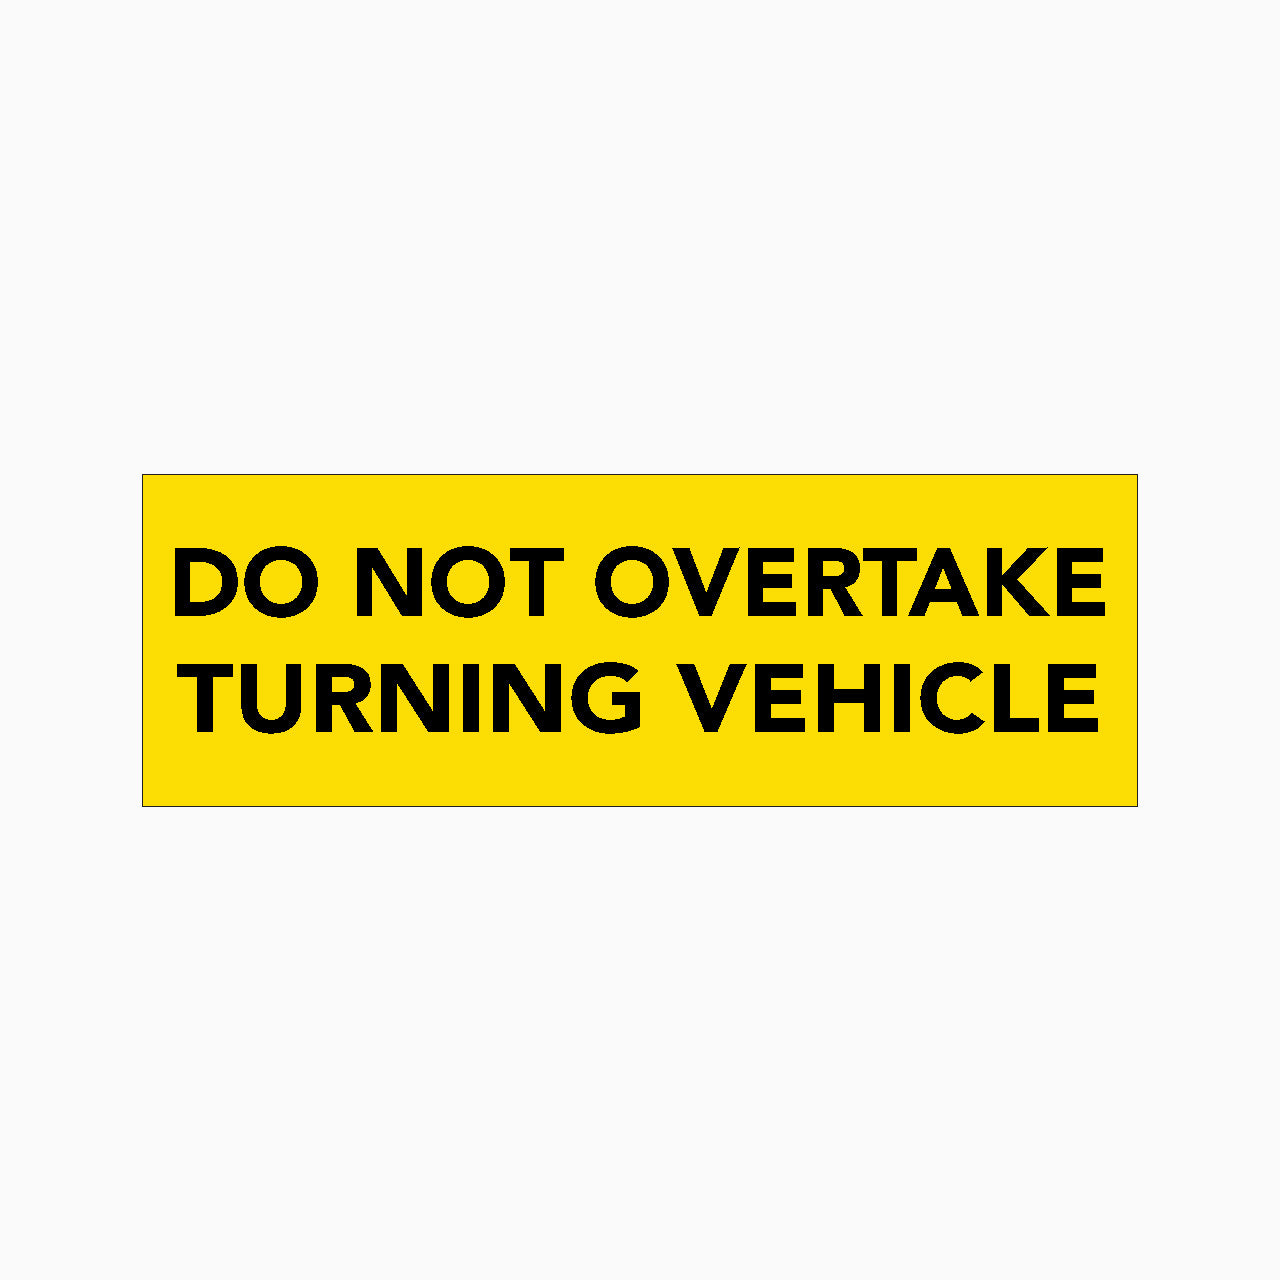 DO NOT OVERTAKE TURNING VEHICLE SIGN